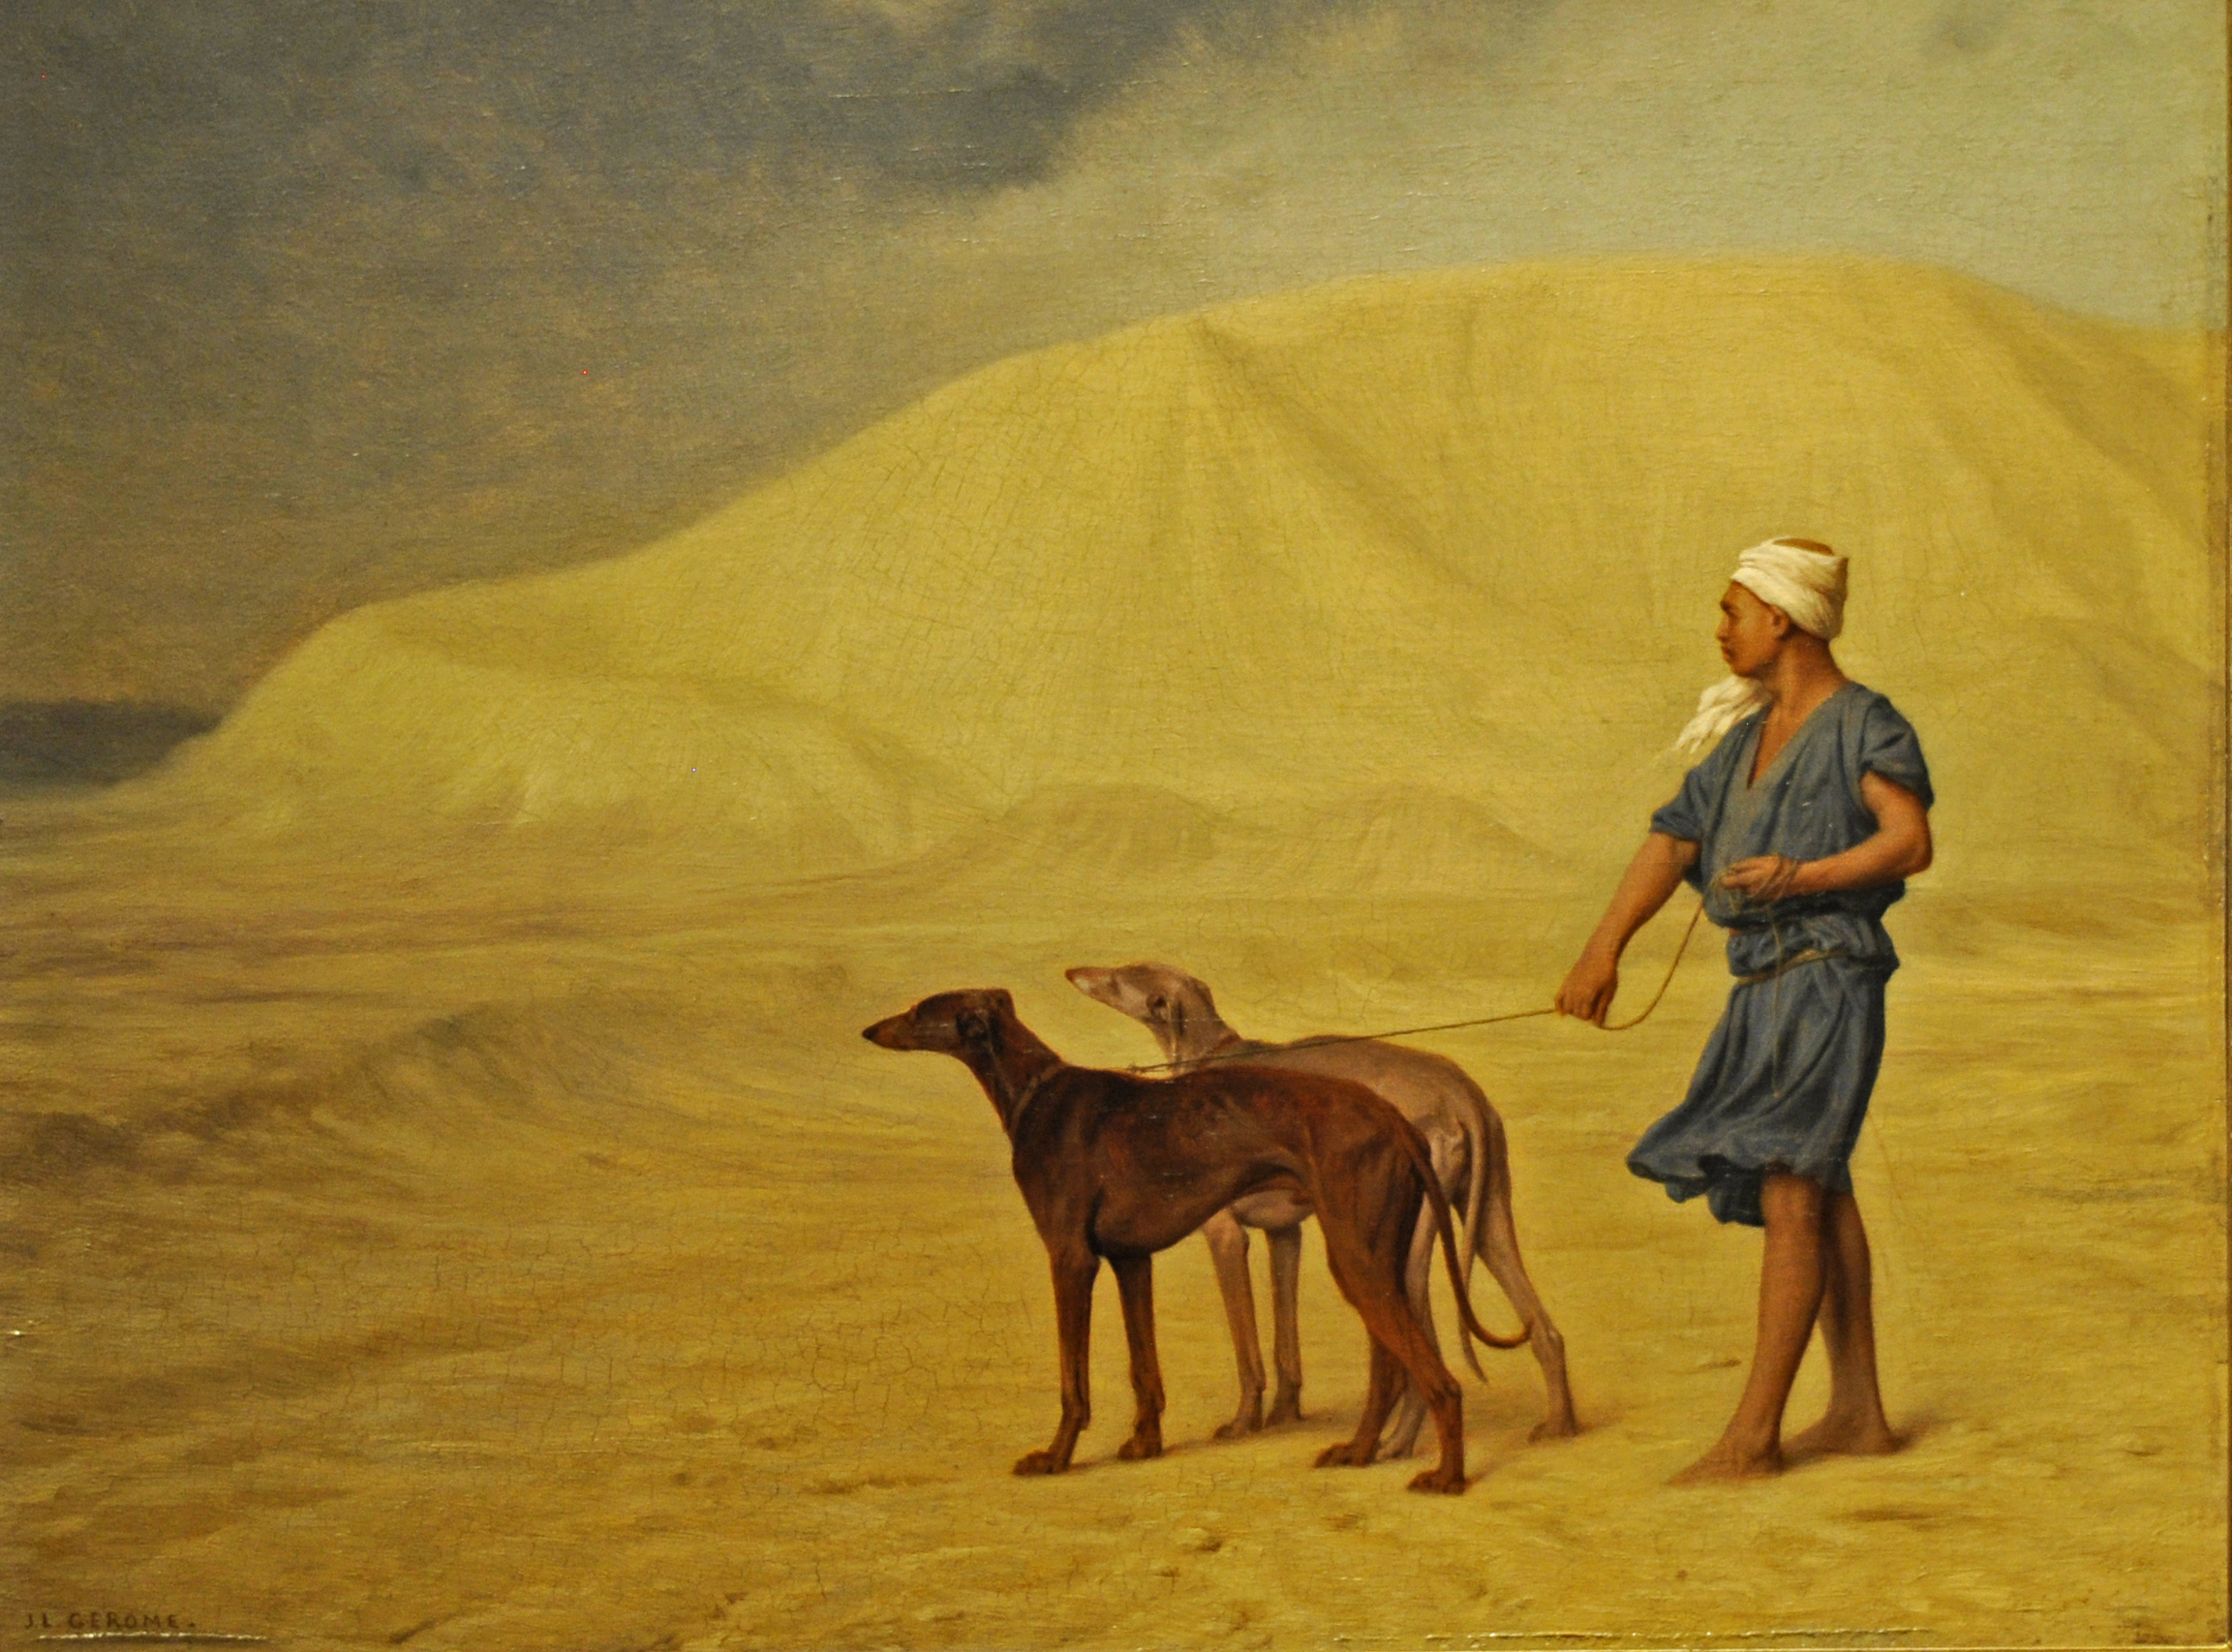 Çölde by Jean-Léon Gérôme - 1867 - 21 x 26.8 cm 